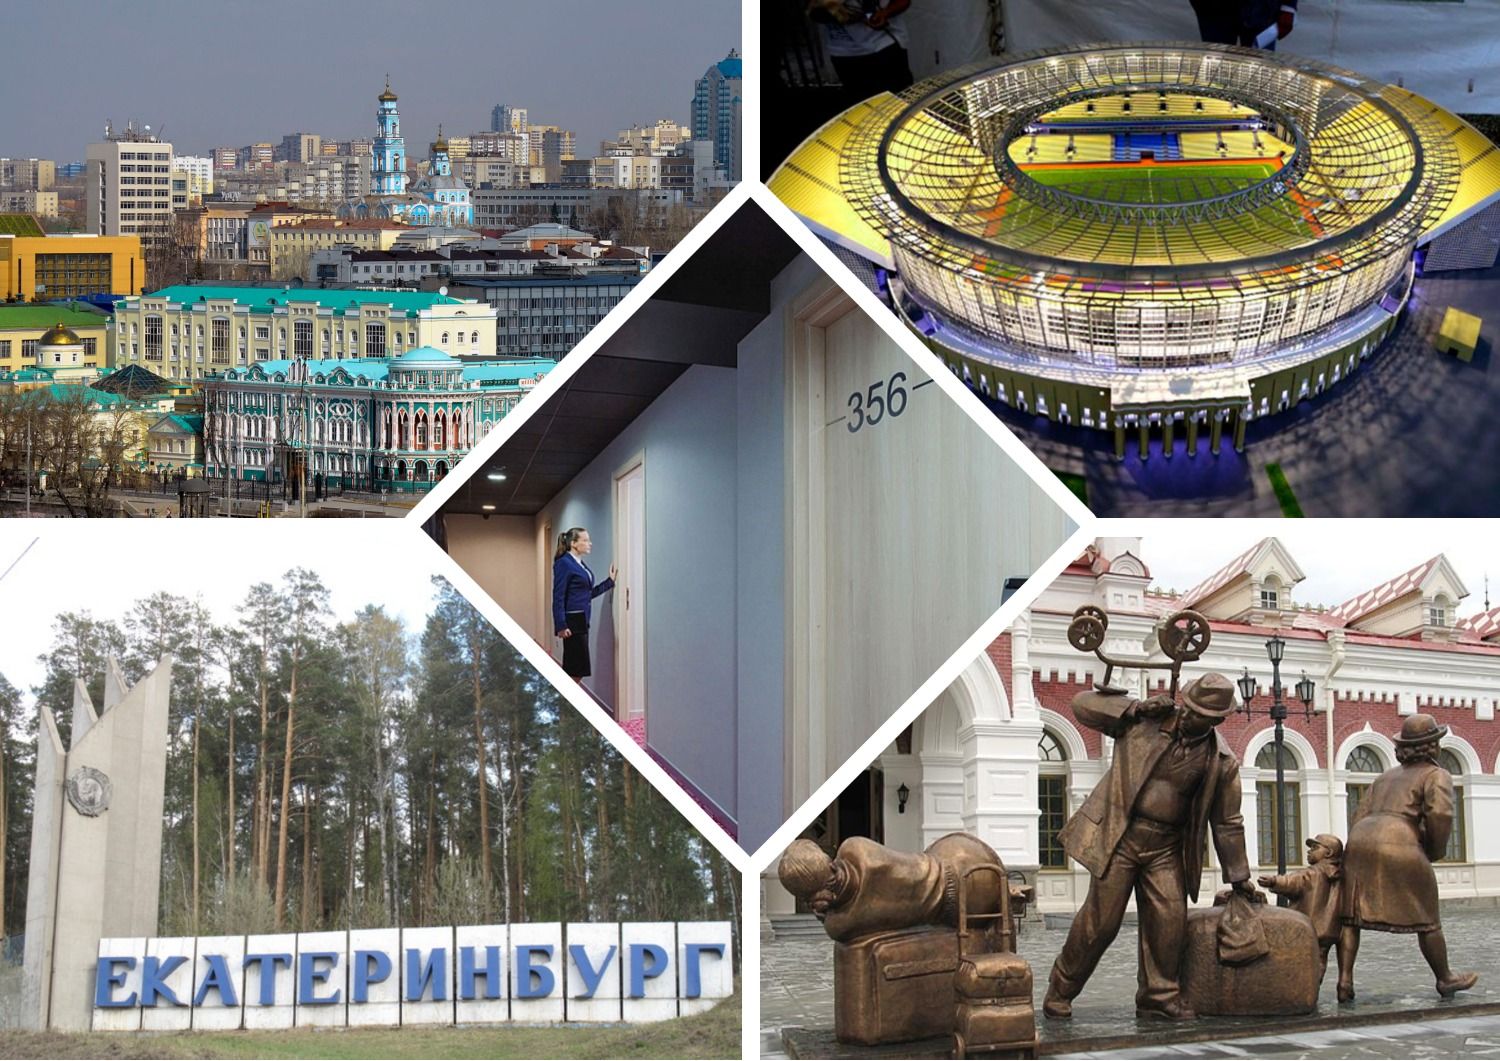 Best cheap hotels, hotels, hostels in Yekaterinburg in 2020